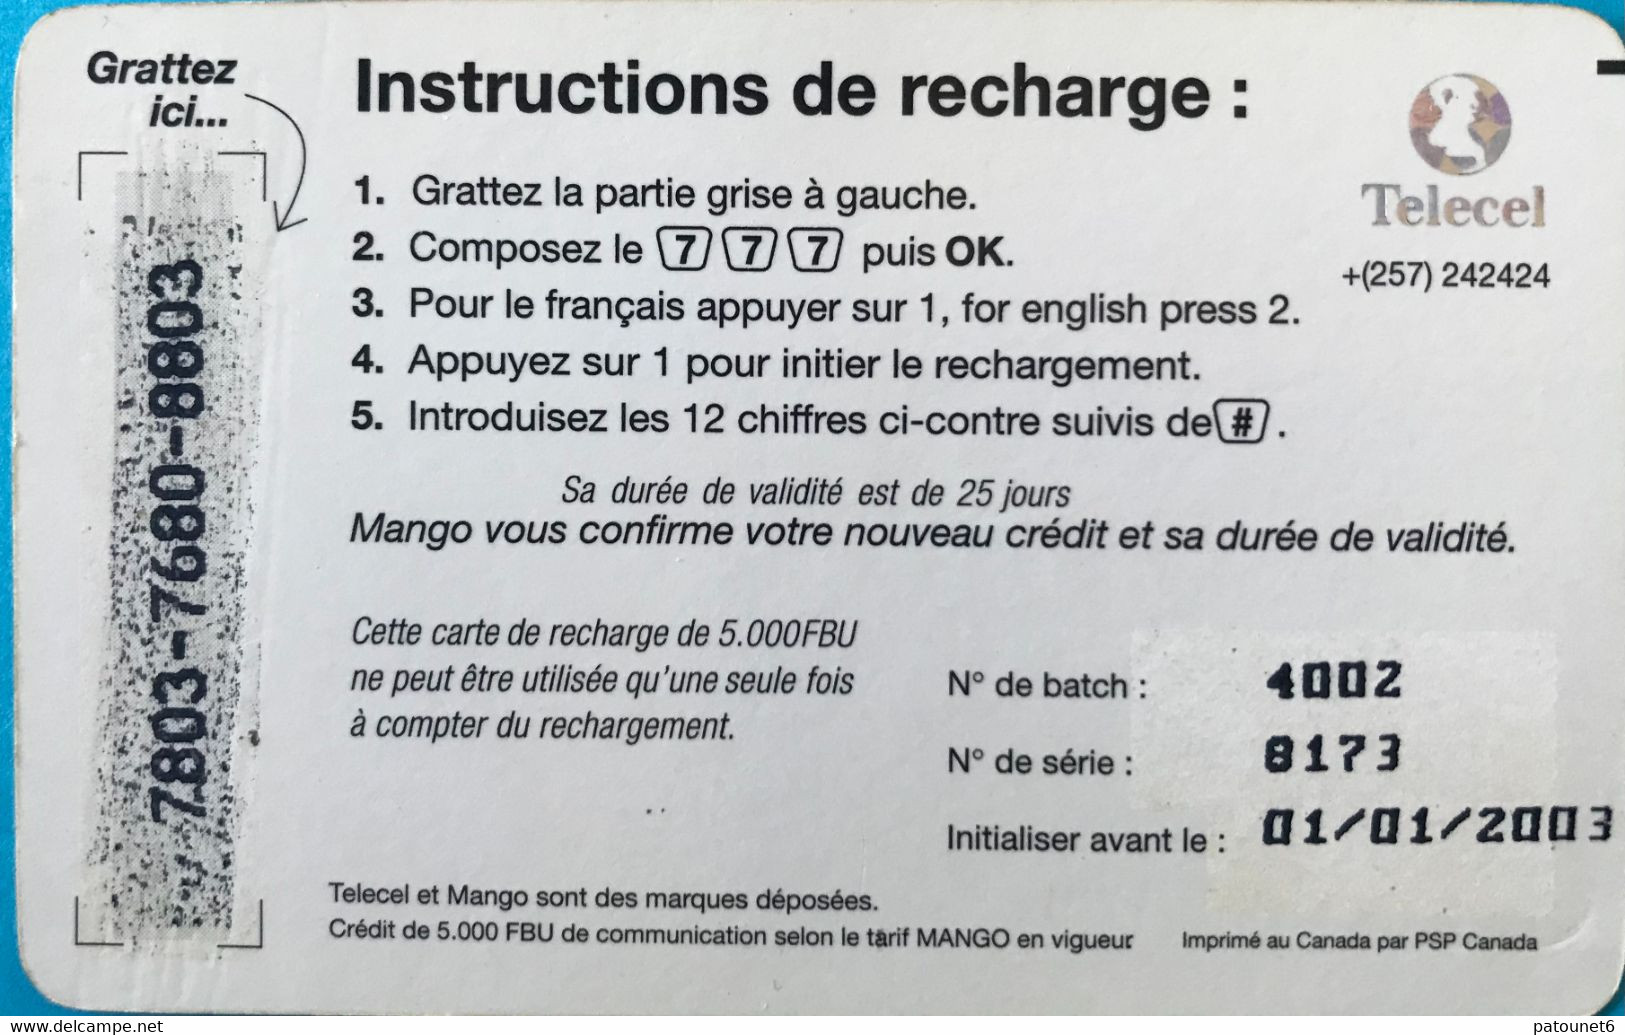 Instructions de recharge